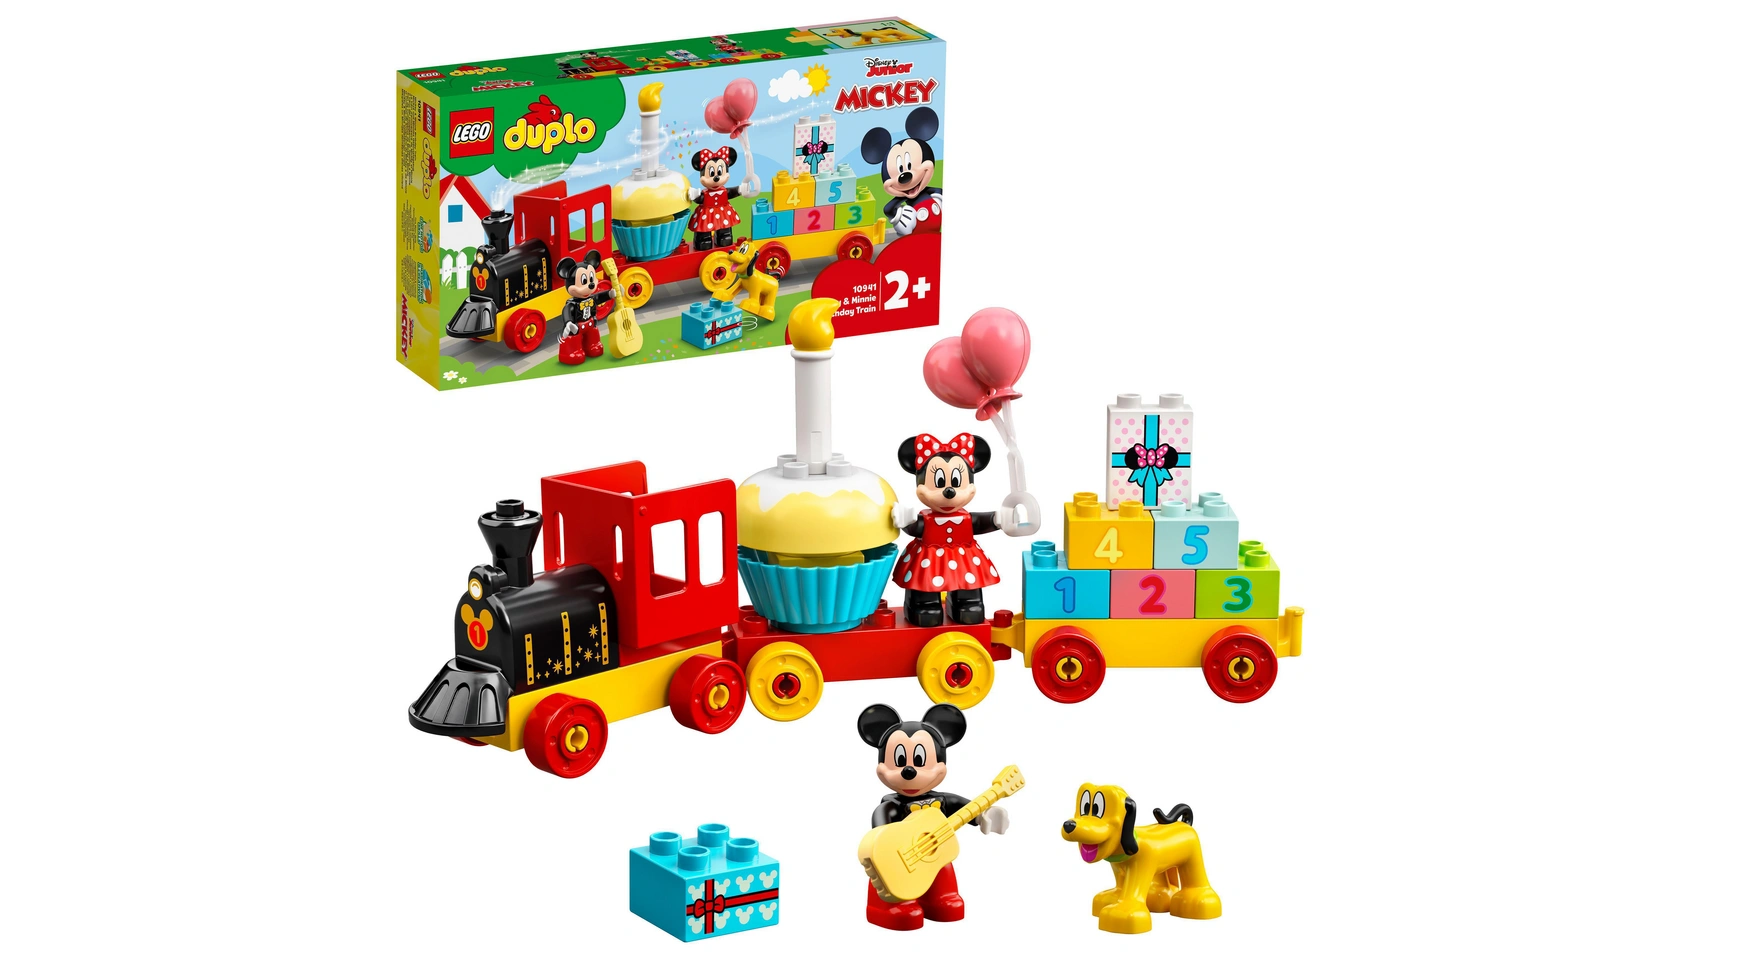 Lego DUPLO Disney оезд День рождения Микки и Минни, игрушечный поезд lego duplo конструктор lego duplo disney праздничный поезд микки и минни 22 детали 10941